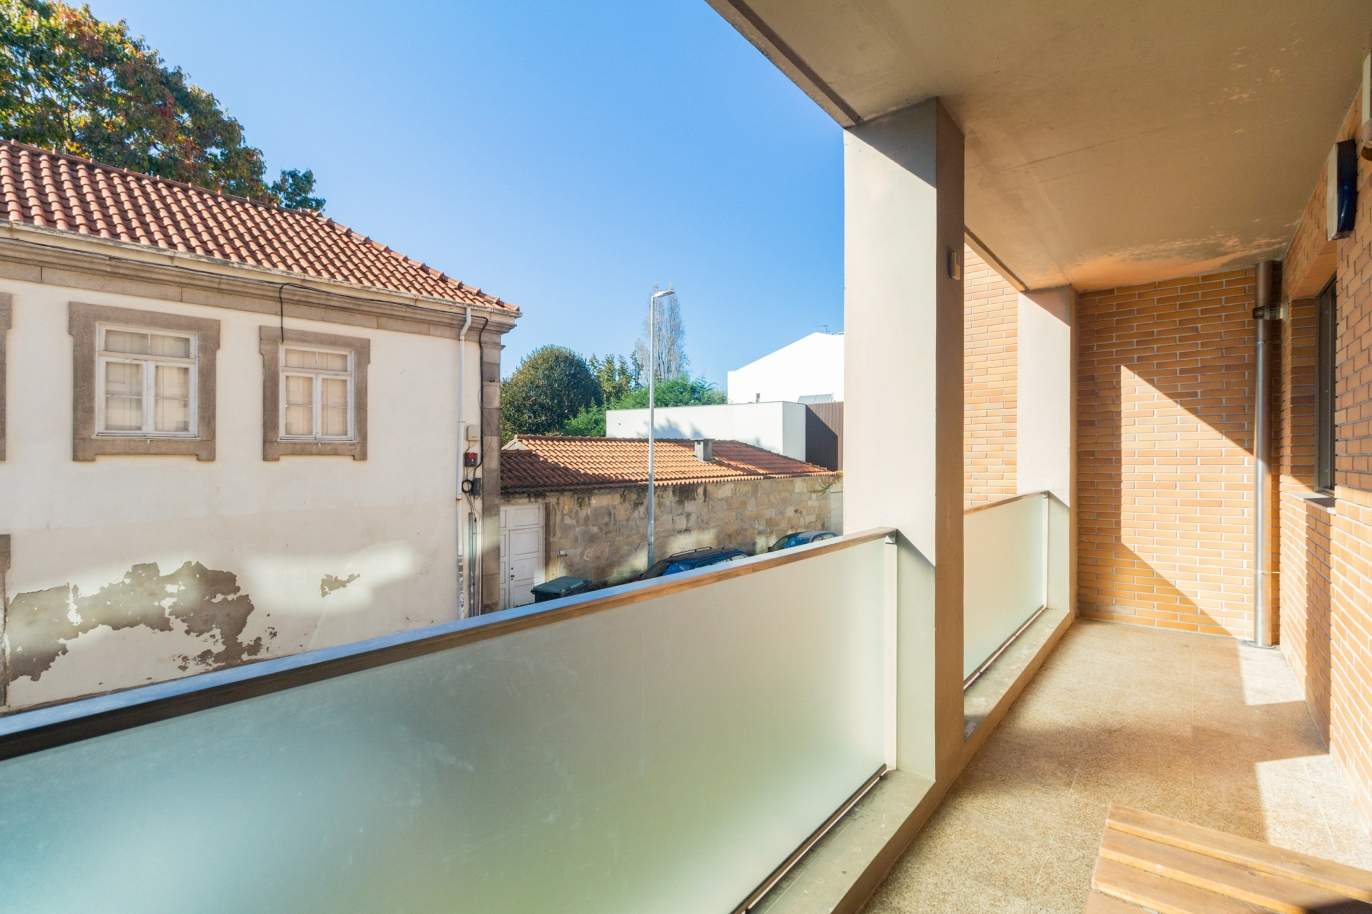 Wohnung mit Balkon, zu verkaufen, in Ramalde, Porto, Portugal_184346